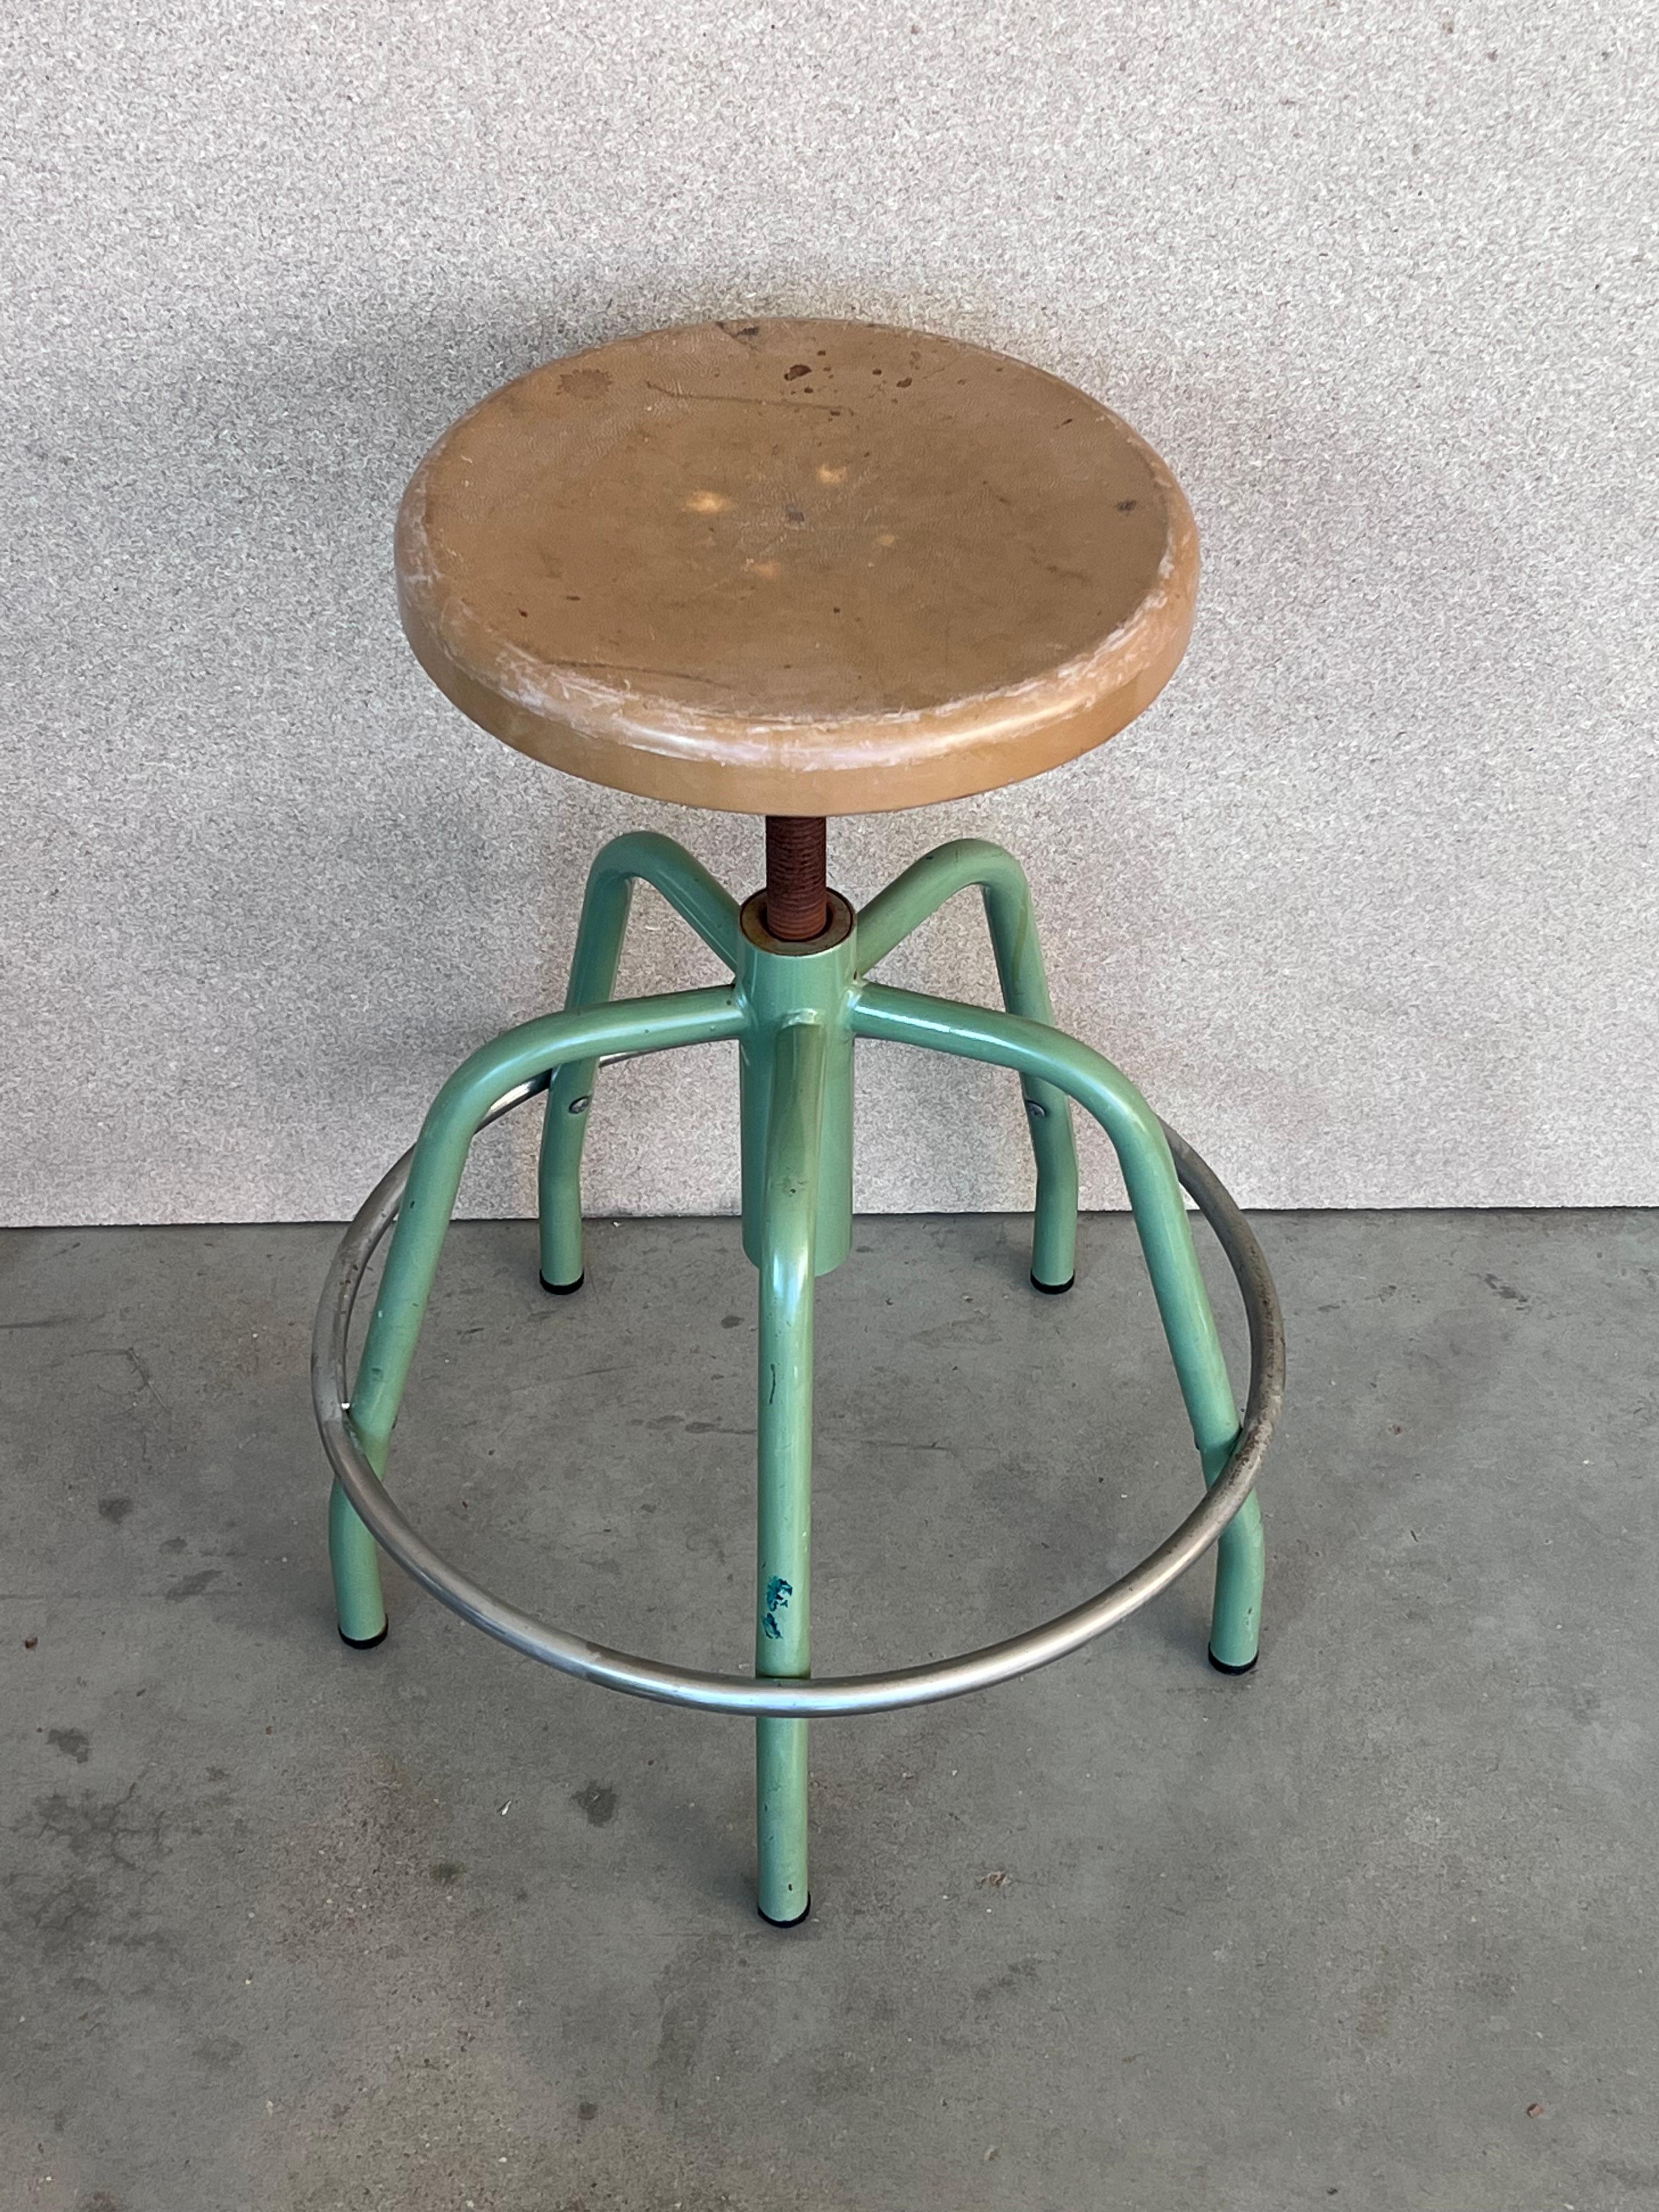 Vintage adjustable medical stool.